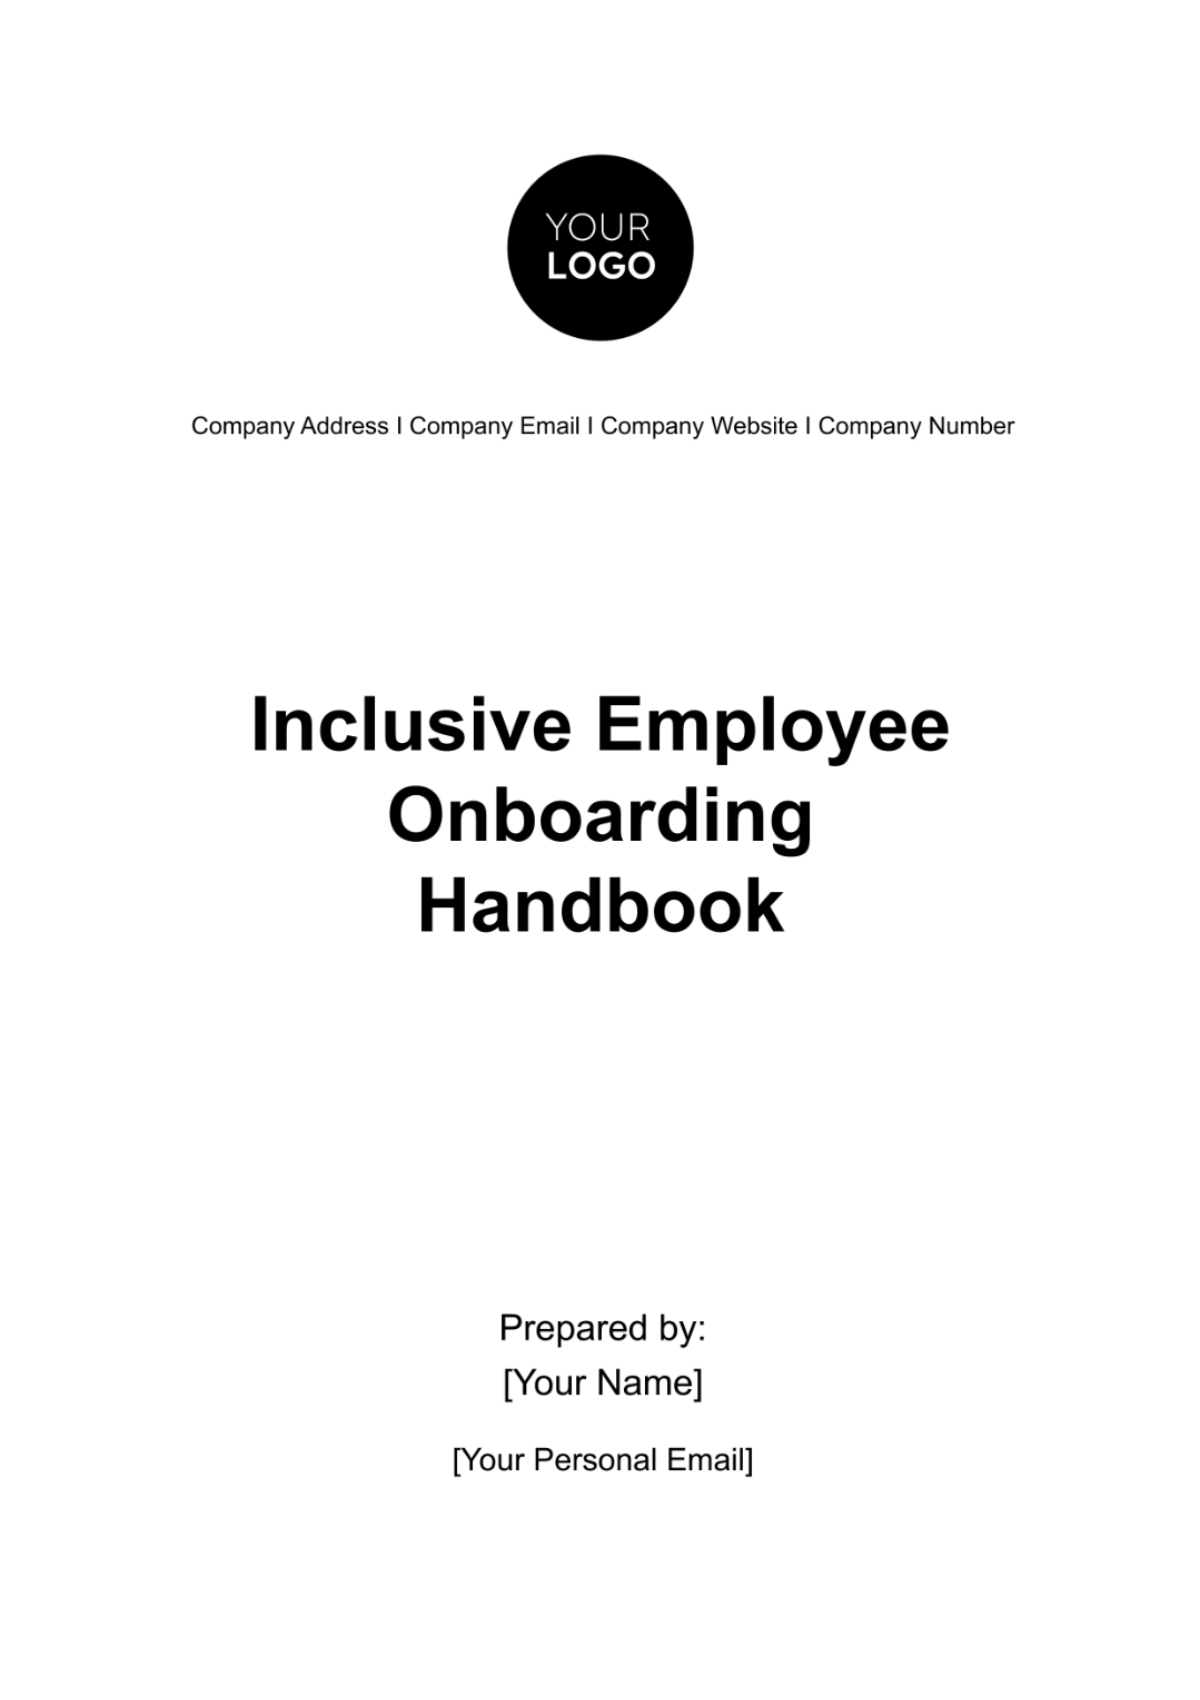 Inclusive Employee Onboarding Handbook HR Template